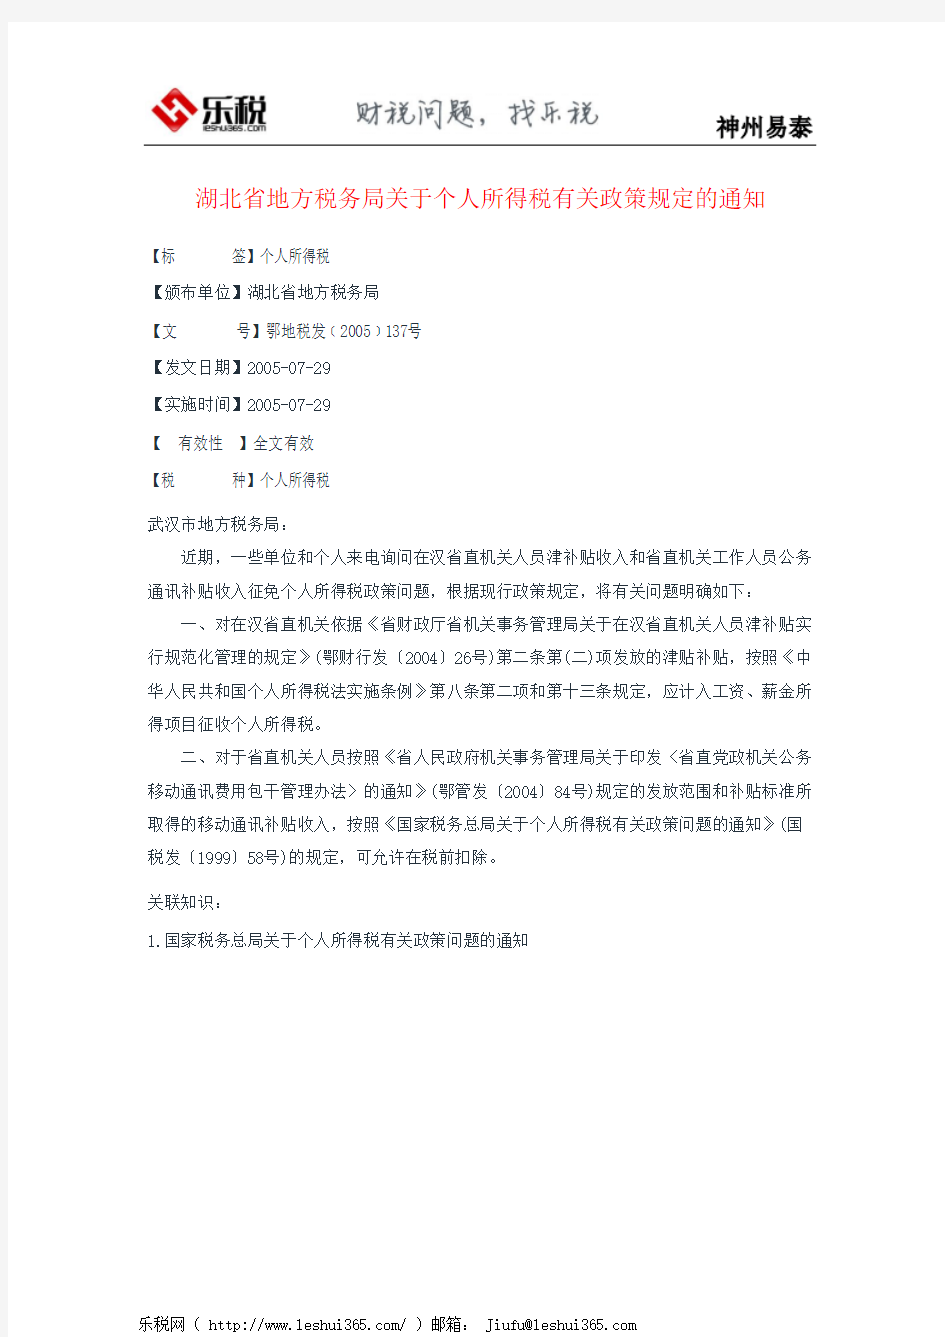 湖北省地方税务局关于个人所得税有关政策规定的通知